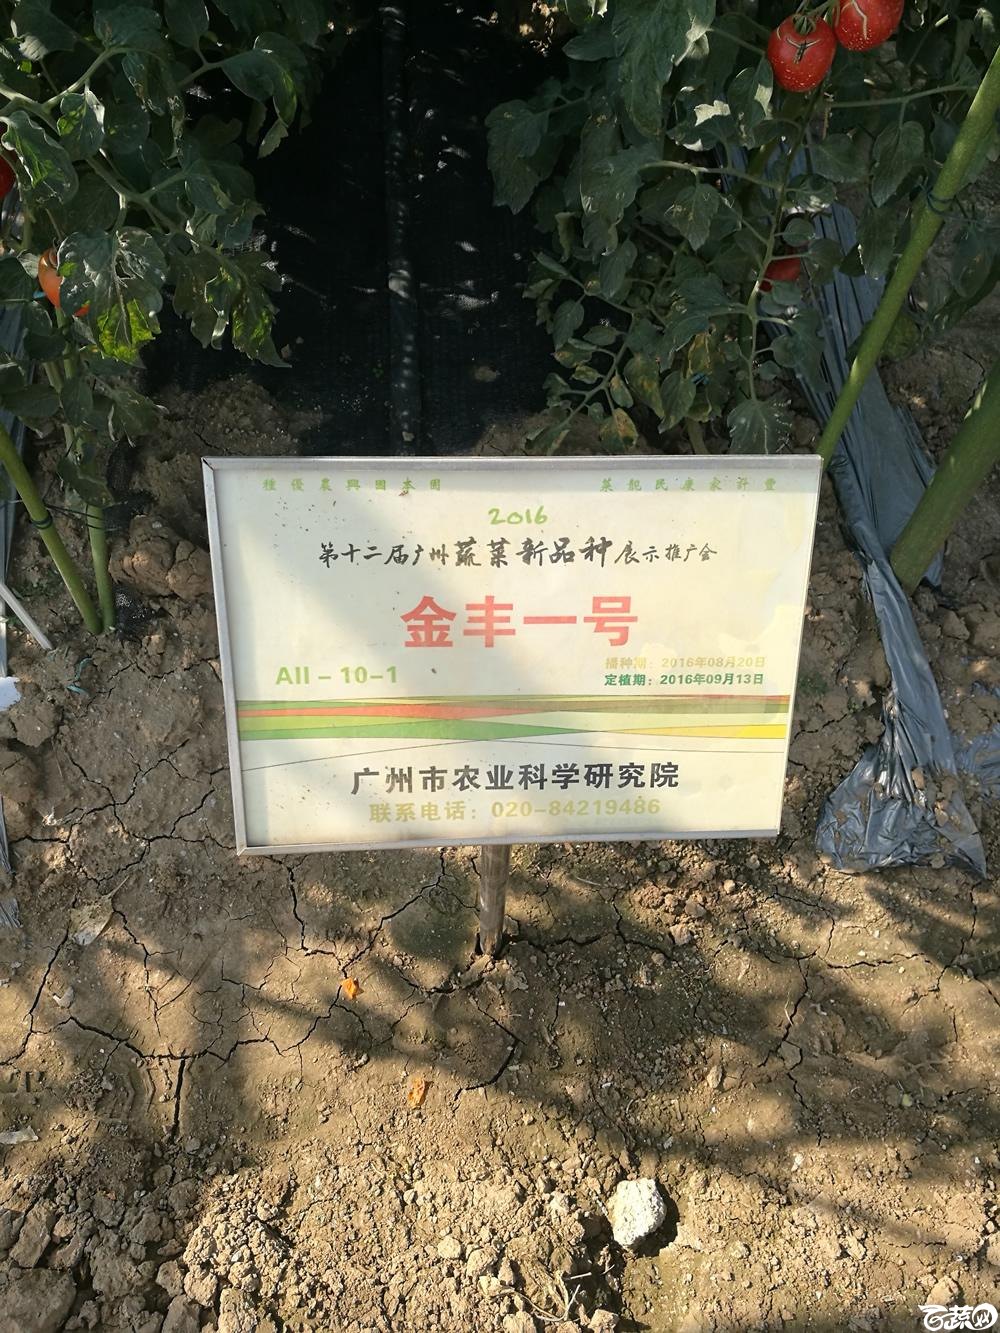 2016年12届广州蔬菜新品种展示会,广州市农科院金丰一号_001.jpg